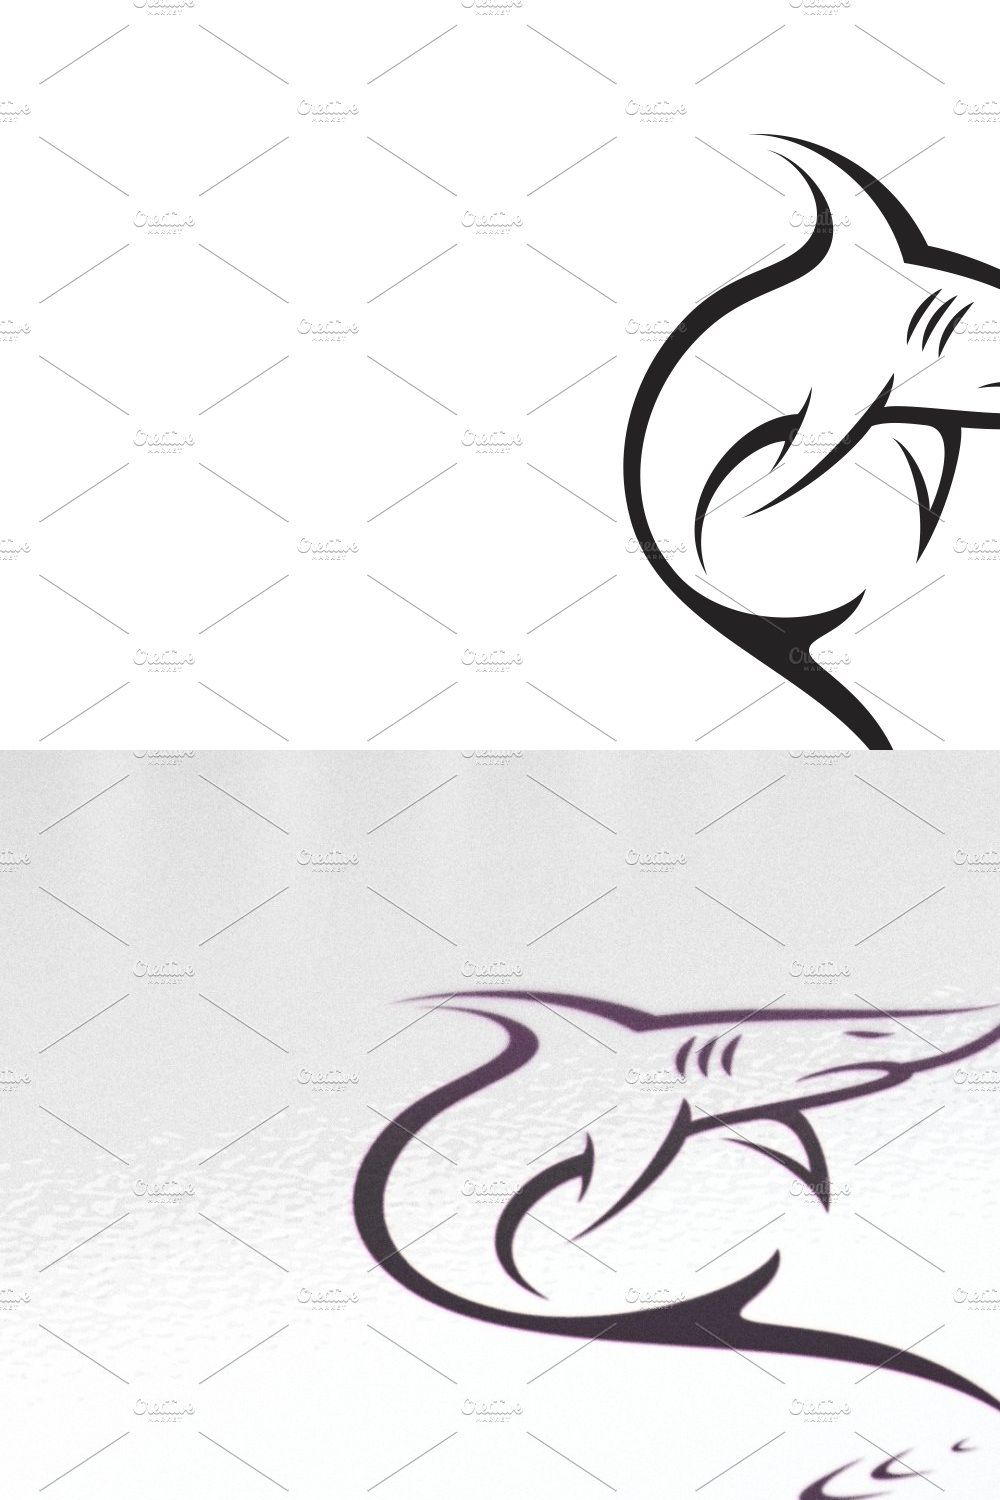 Shark Logo pinterest preview image.